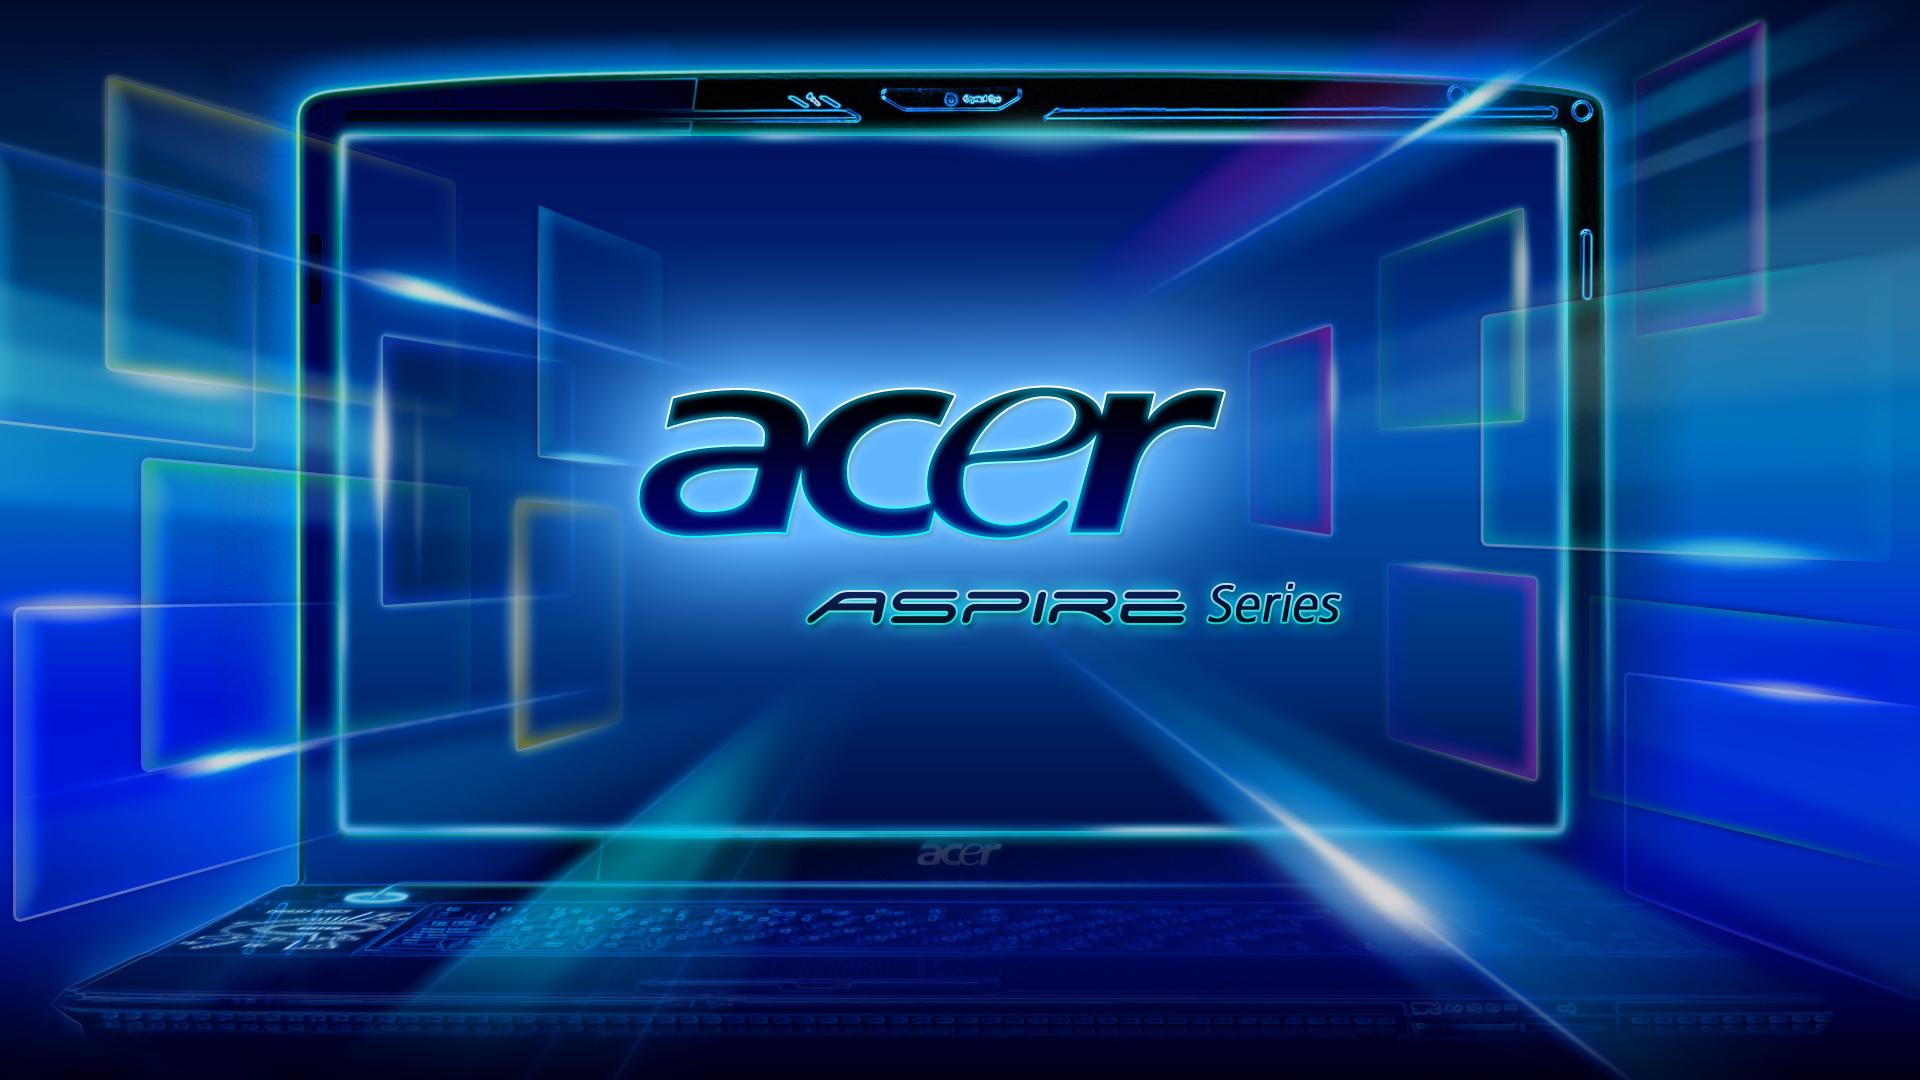 Acer Sample Pictures 壁紙 ファンポップ